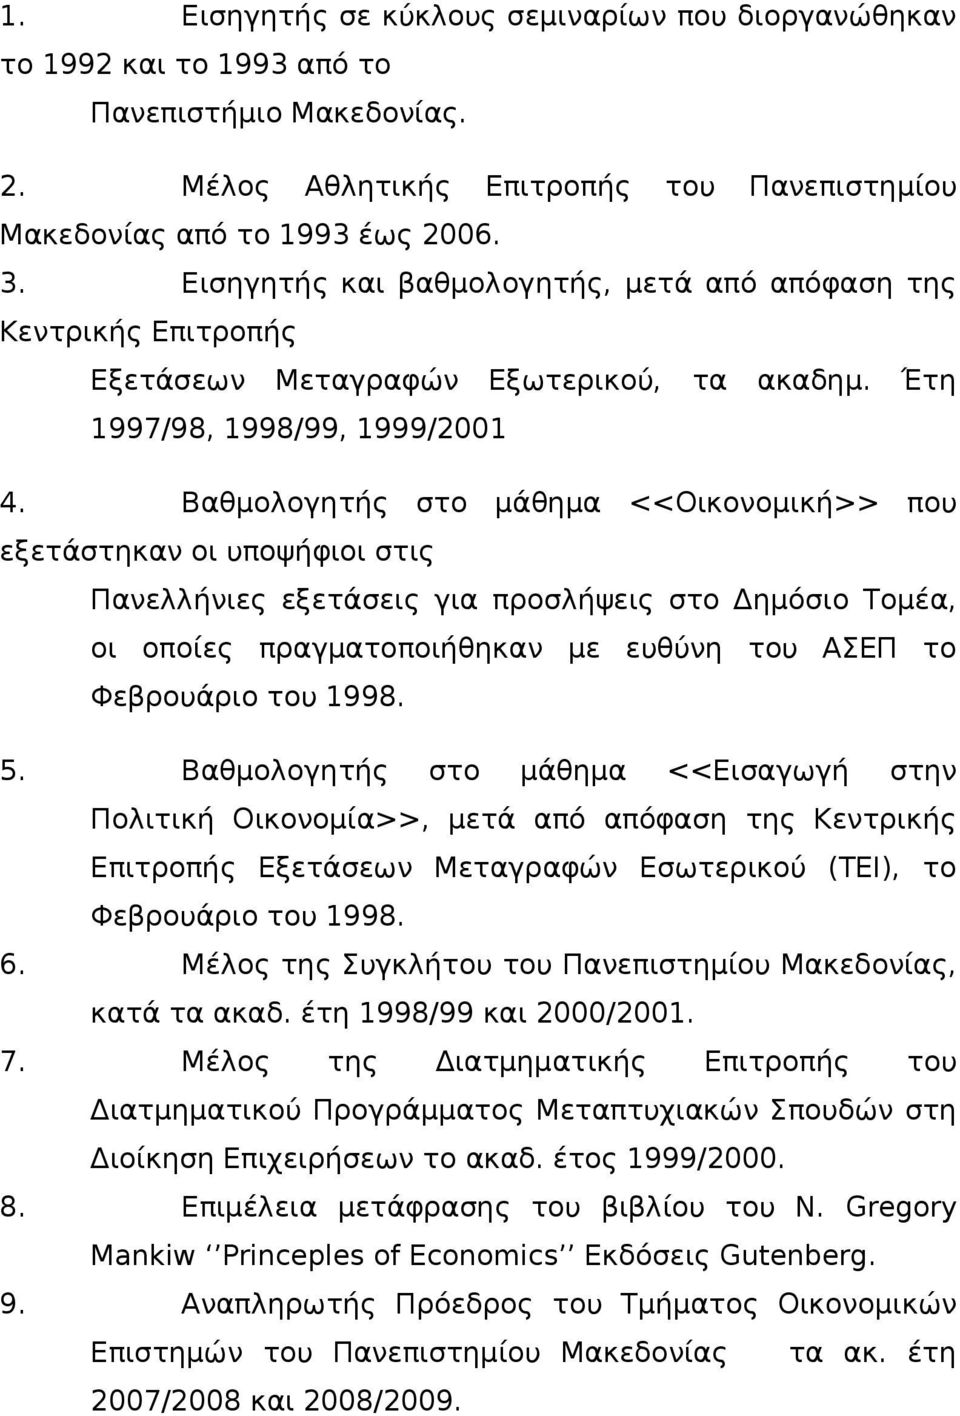 Βαθμολογητής στο μάθημα <<Οικονομική>> που εξετάστηκαν οι υποψήφιοι στις Πανελλήνιες εξετάσεις για προσλήψεις στο Δημόσιο Τομέα, οι οποίες πραγματοποιήθηκαν με ευθύνη του ΑΣΕΠ το Φεβρουάριο του 1998.